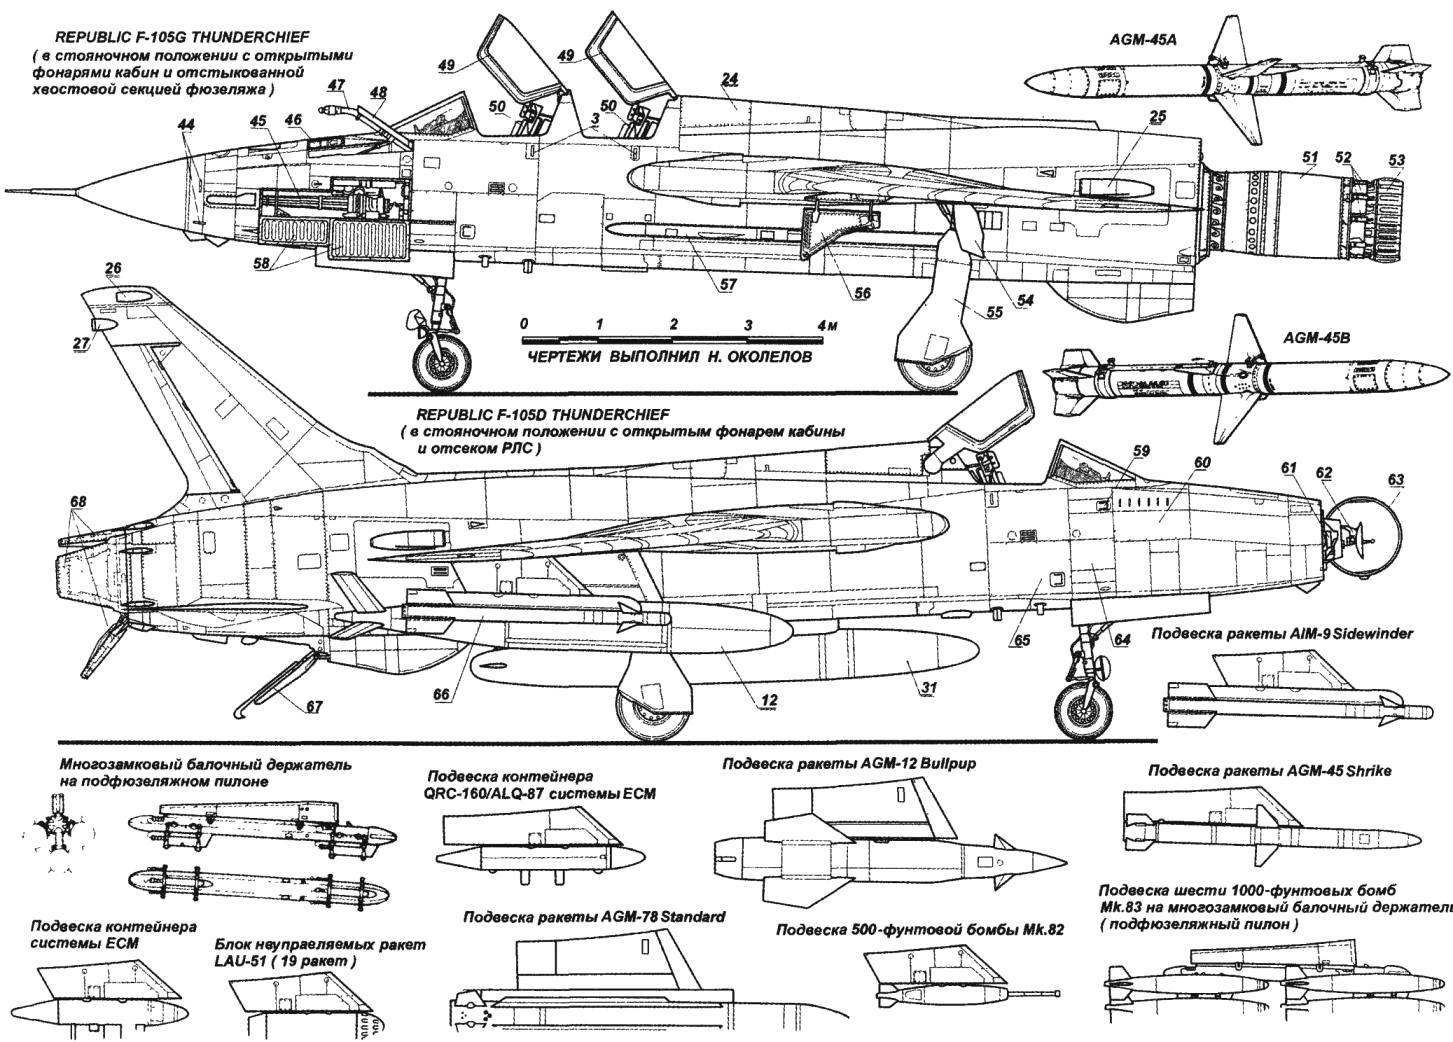 Сверхзвуковой тактический истребитель-бомбардировщик Republic F-105 Thunderchief